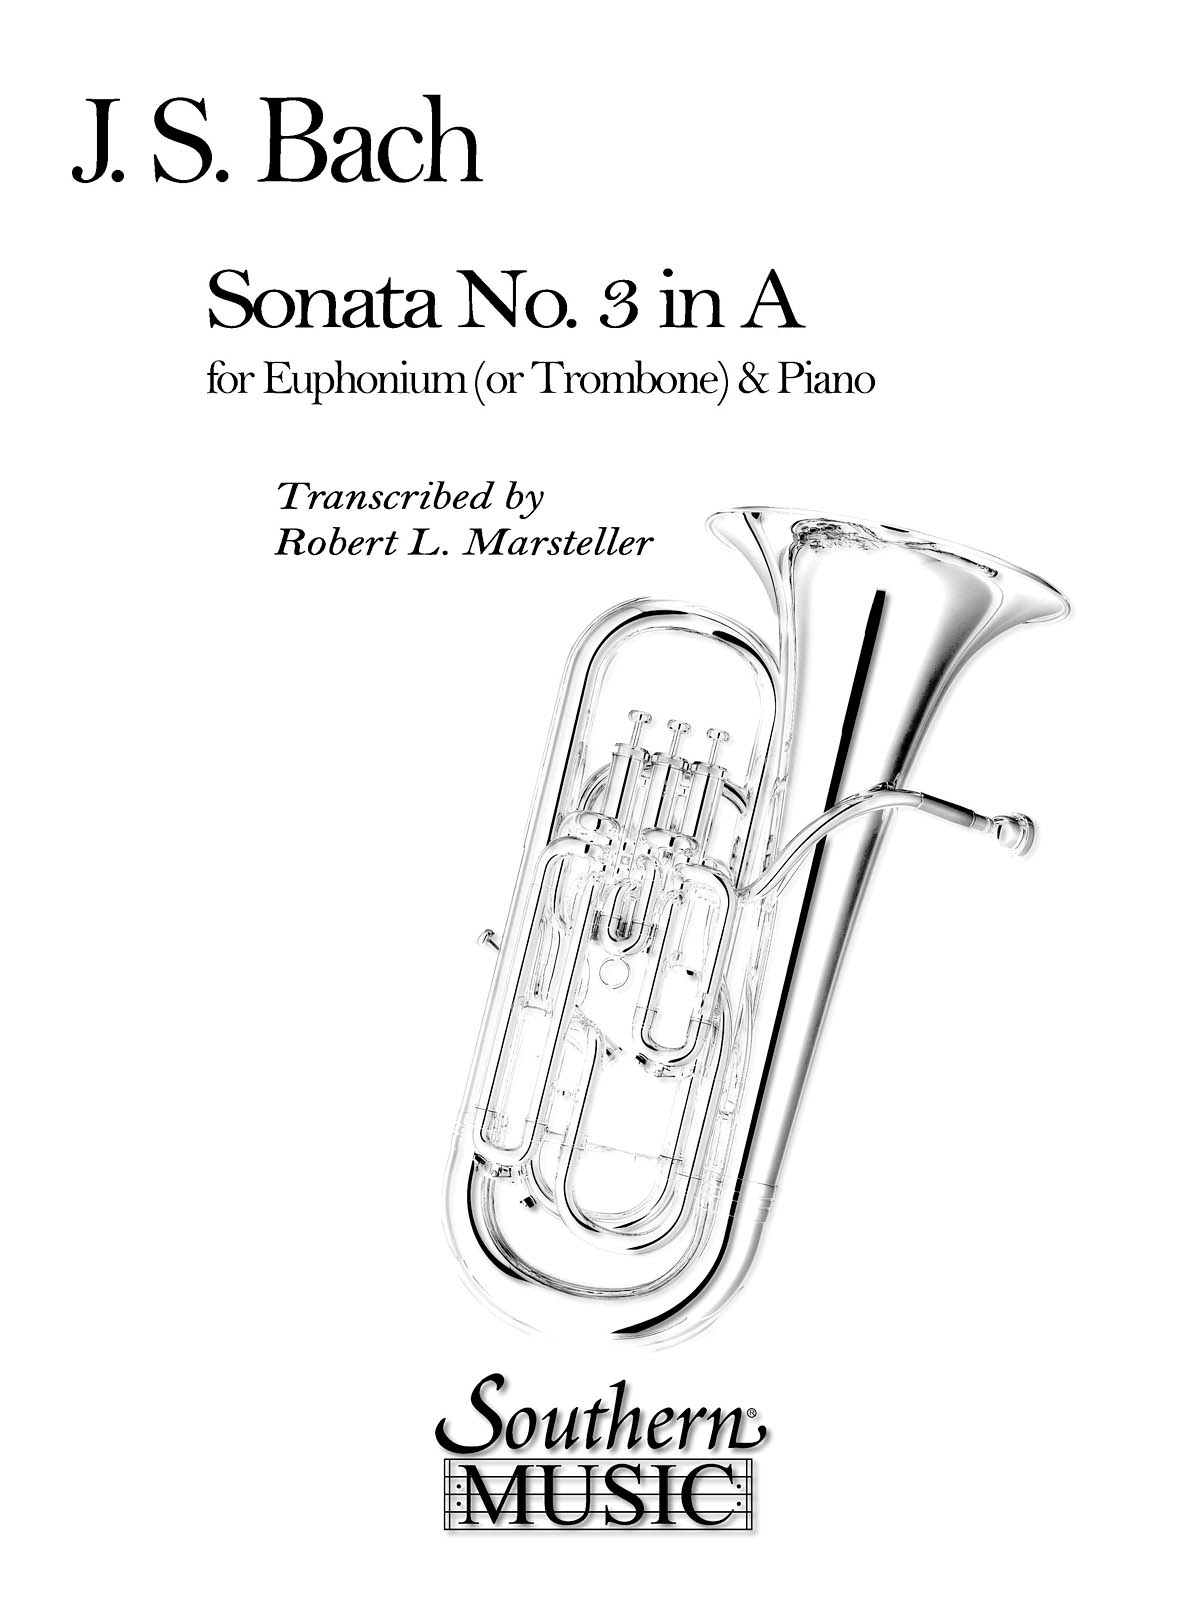 Sonata No. 3 (Archive)